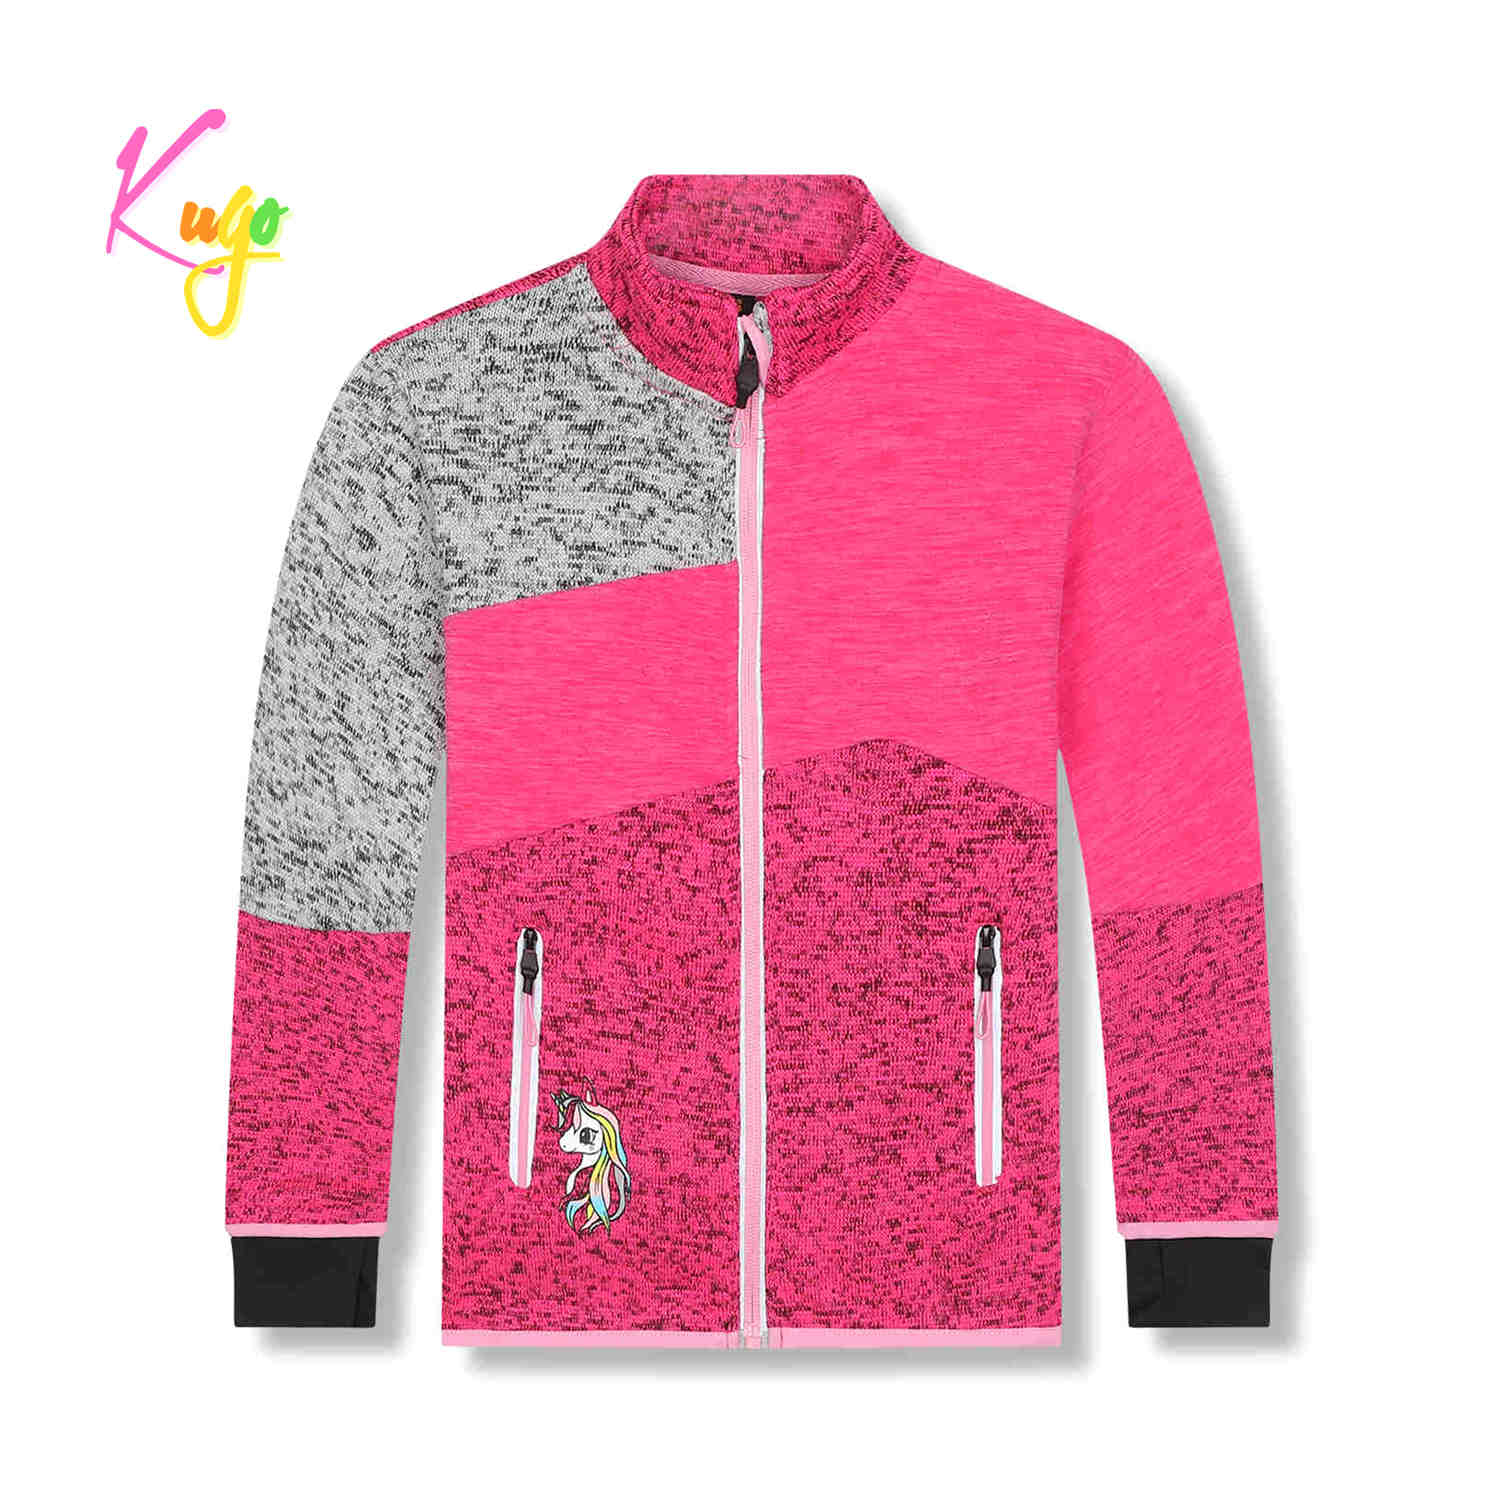 Dívčí outdoorová mikina - KUGO HM1981, růžová Barva: Růžová, Velikost: 104